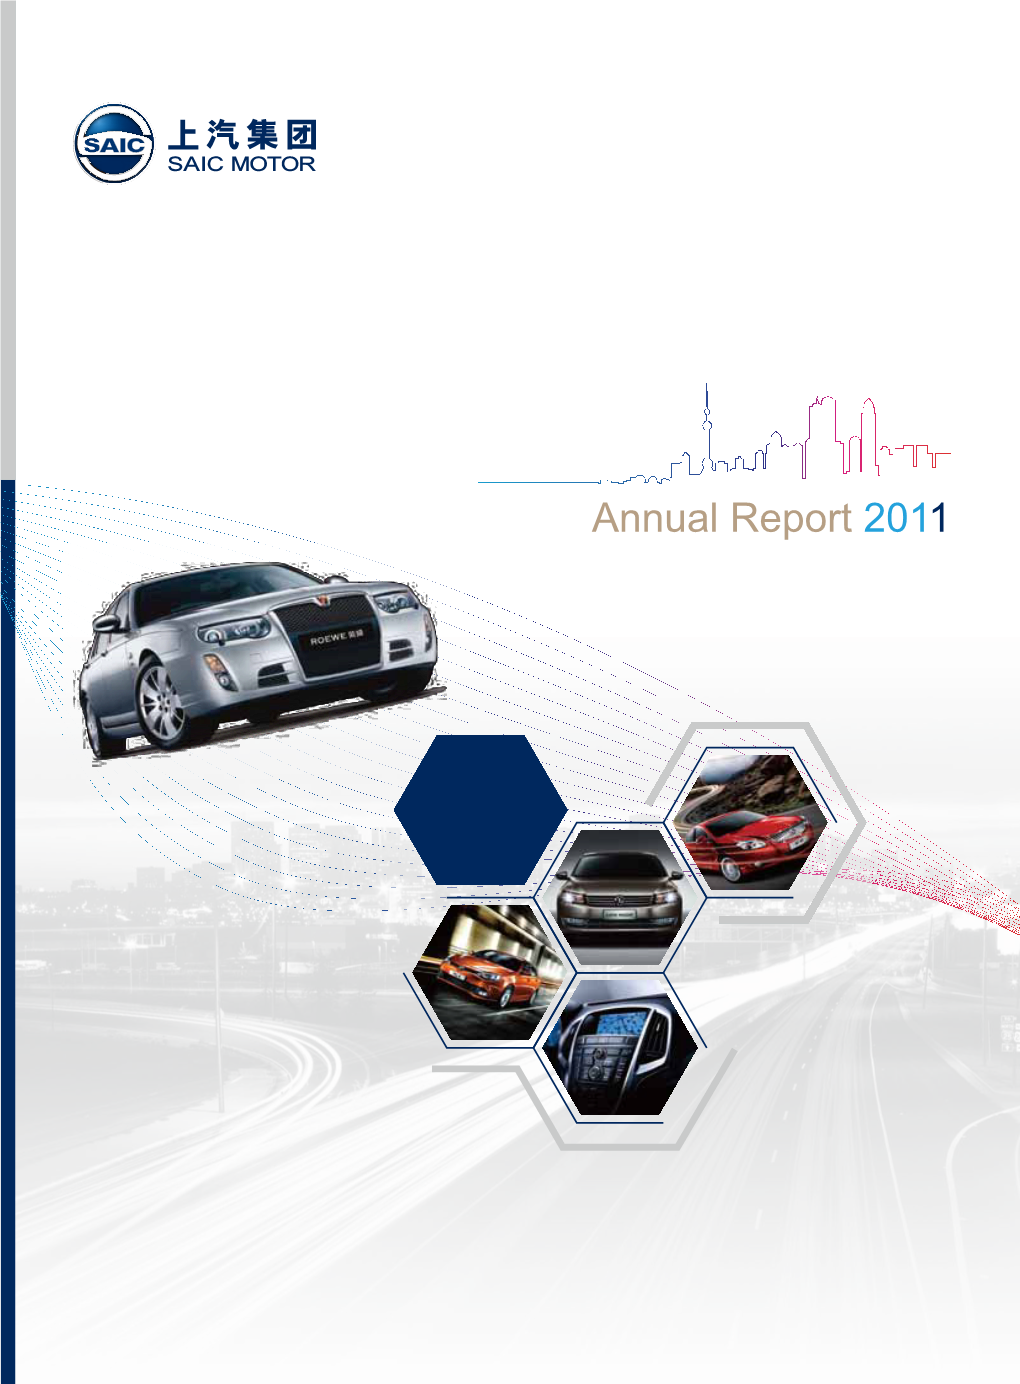 SAIC MOTOR Annual Report 2011